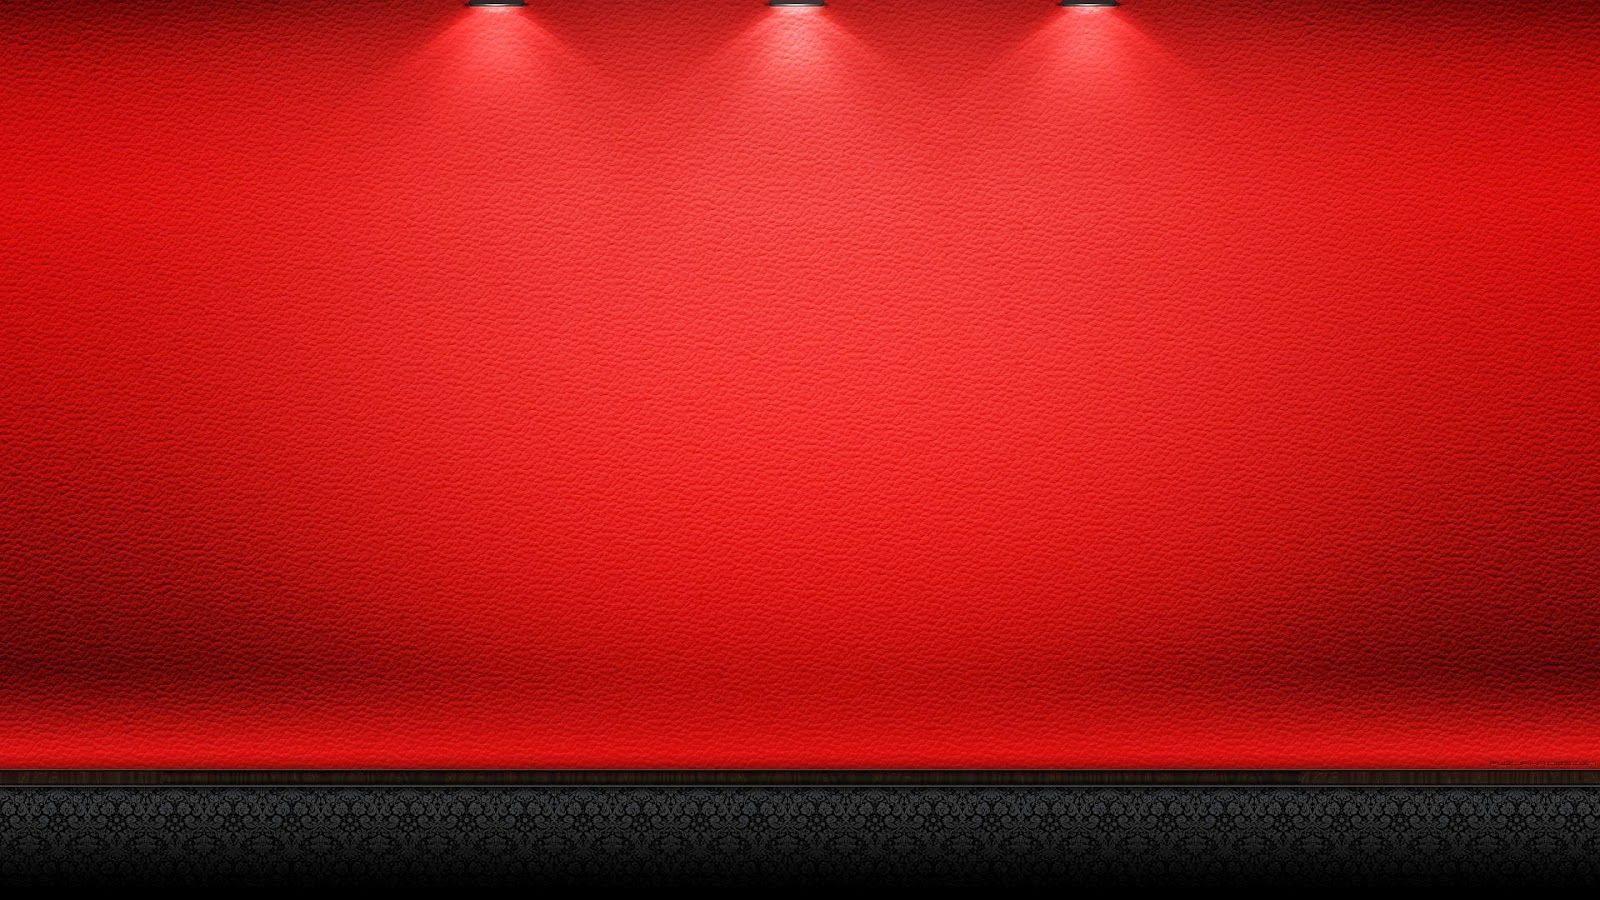 Black And Red Design Wallpaper For Desktop Background Wallpaper  फट शयर